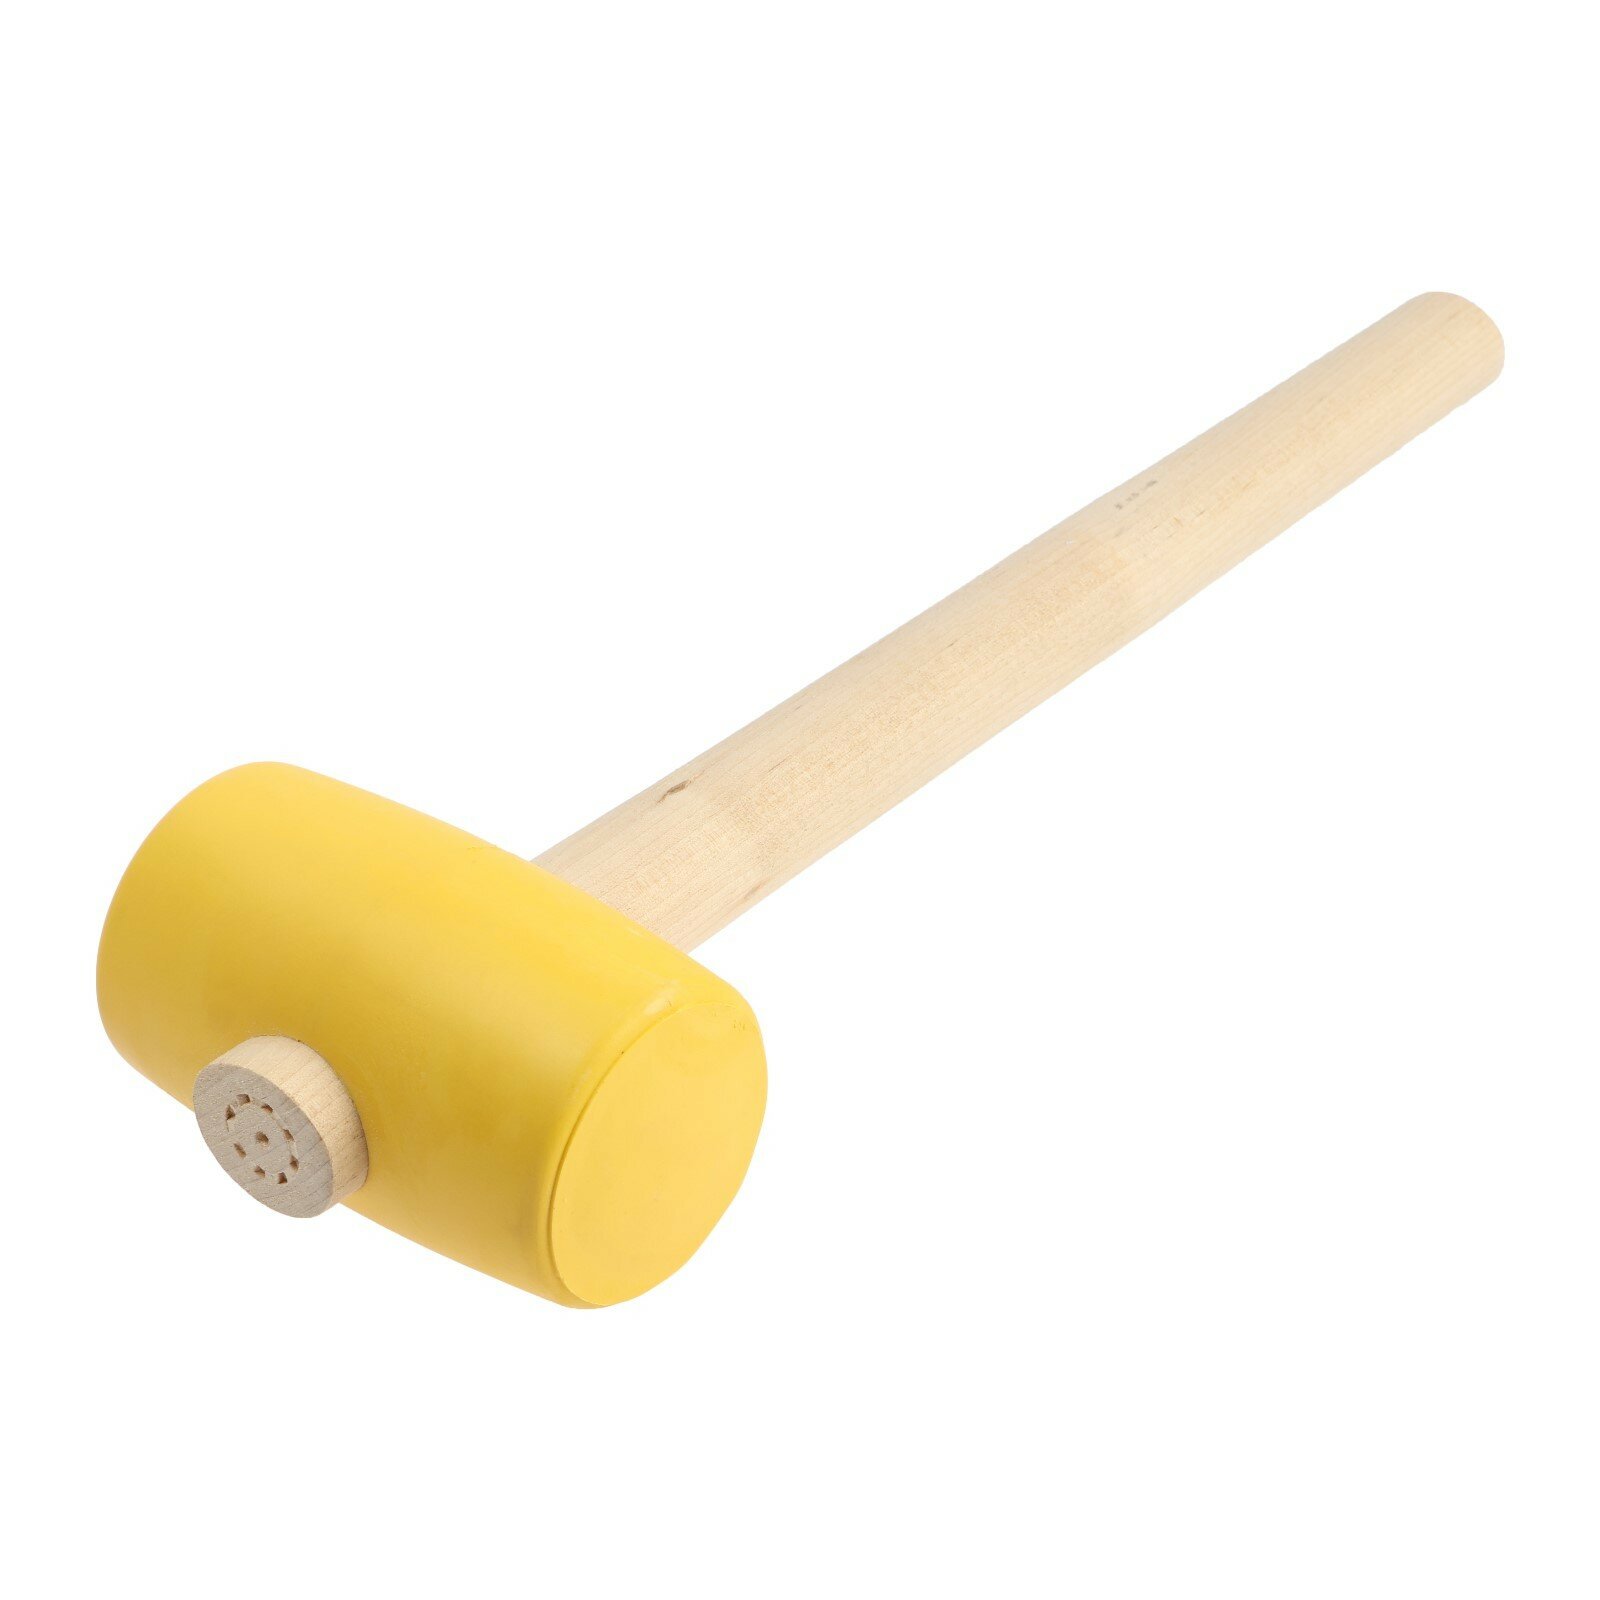 Киянка, деревянная рукоятка, желтая резина, 55 мм, 400 г